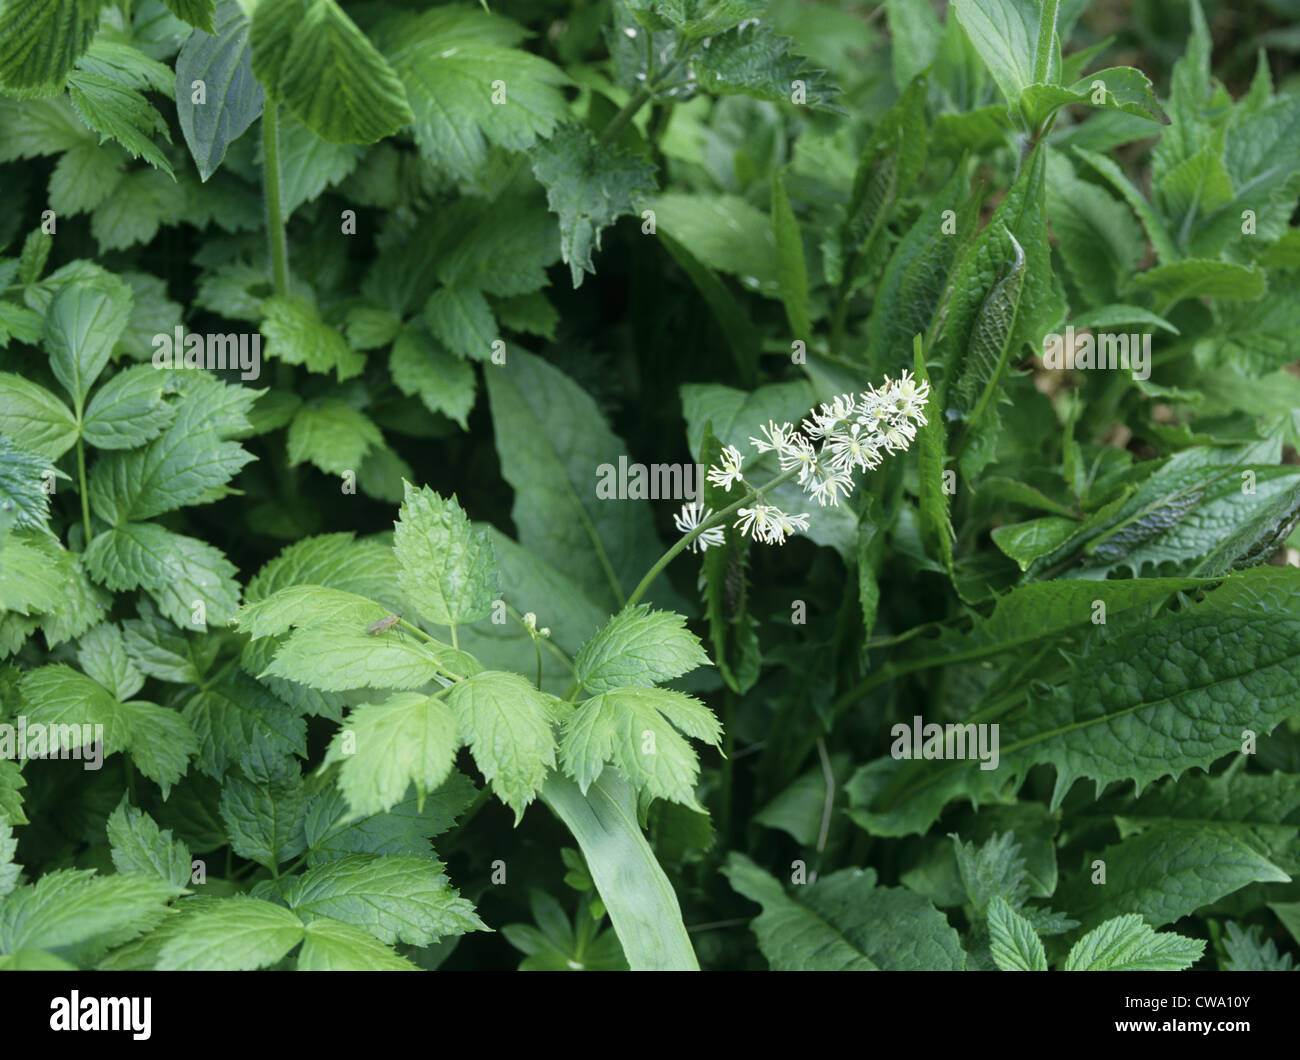 BANEBERRY Actaea spicata (Ranunculaceae) Stock Photo